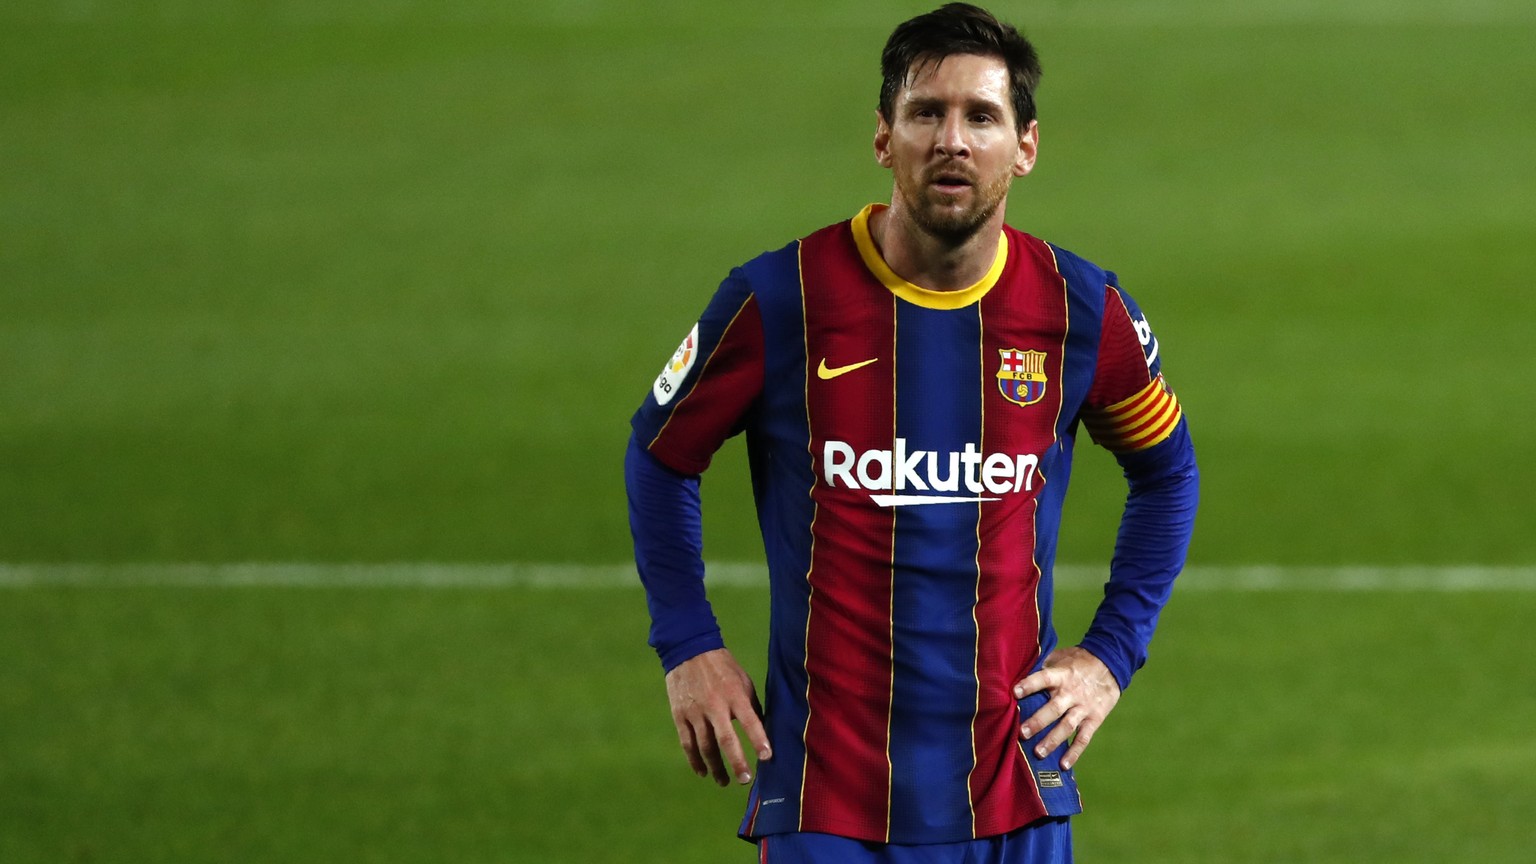 Zieht Messi sein berühmtes rot-blaues Trikot tatsächlich aus?